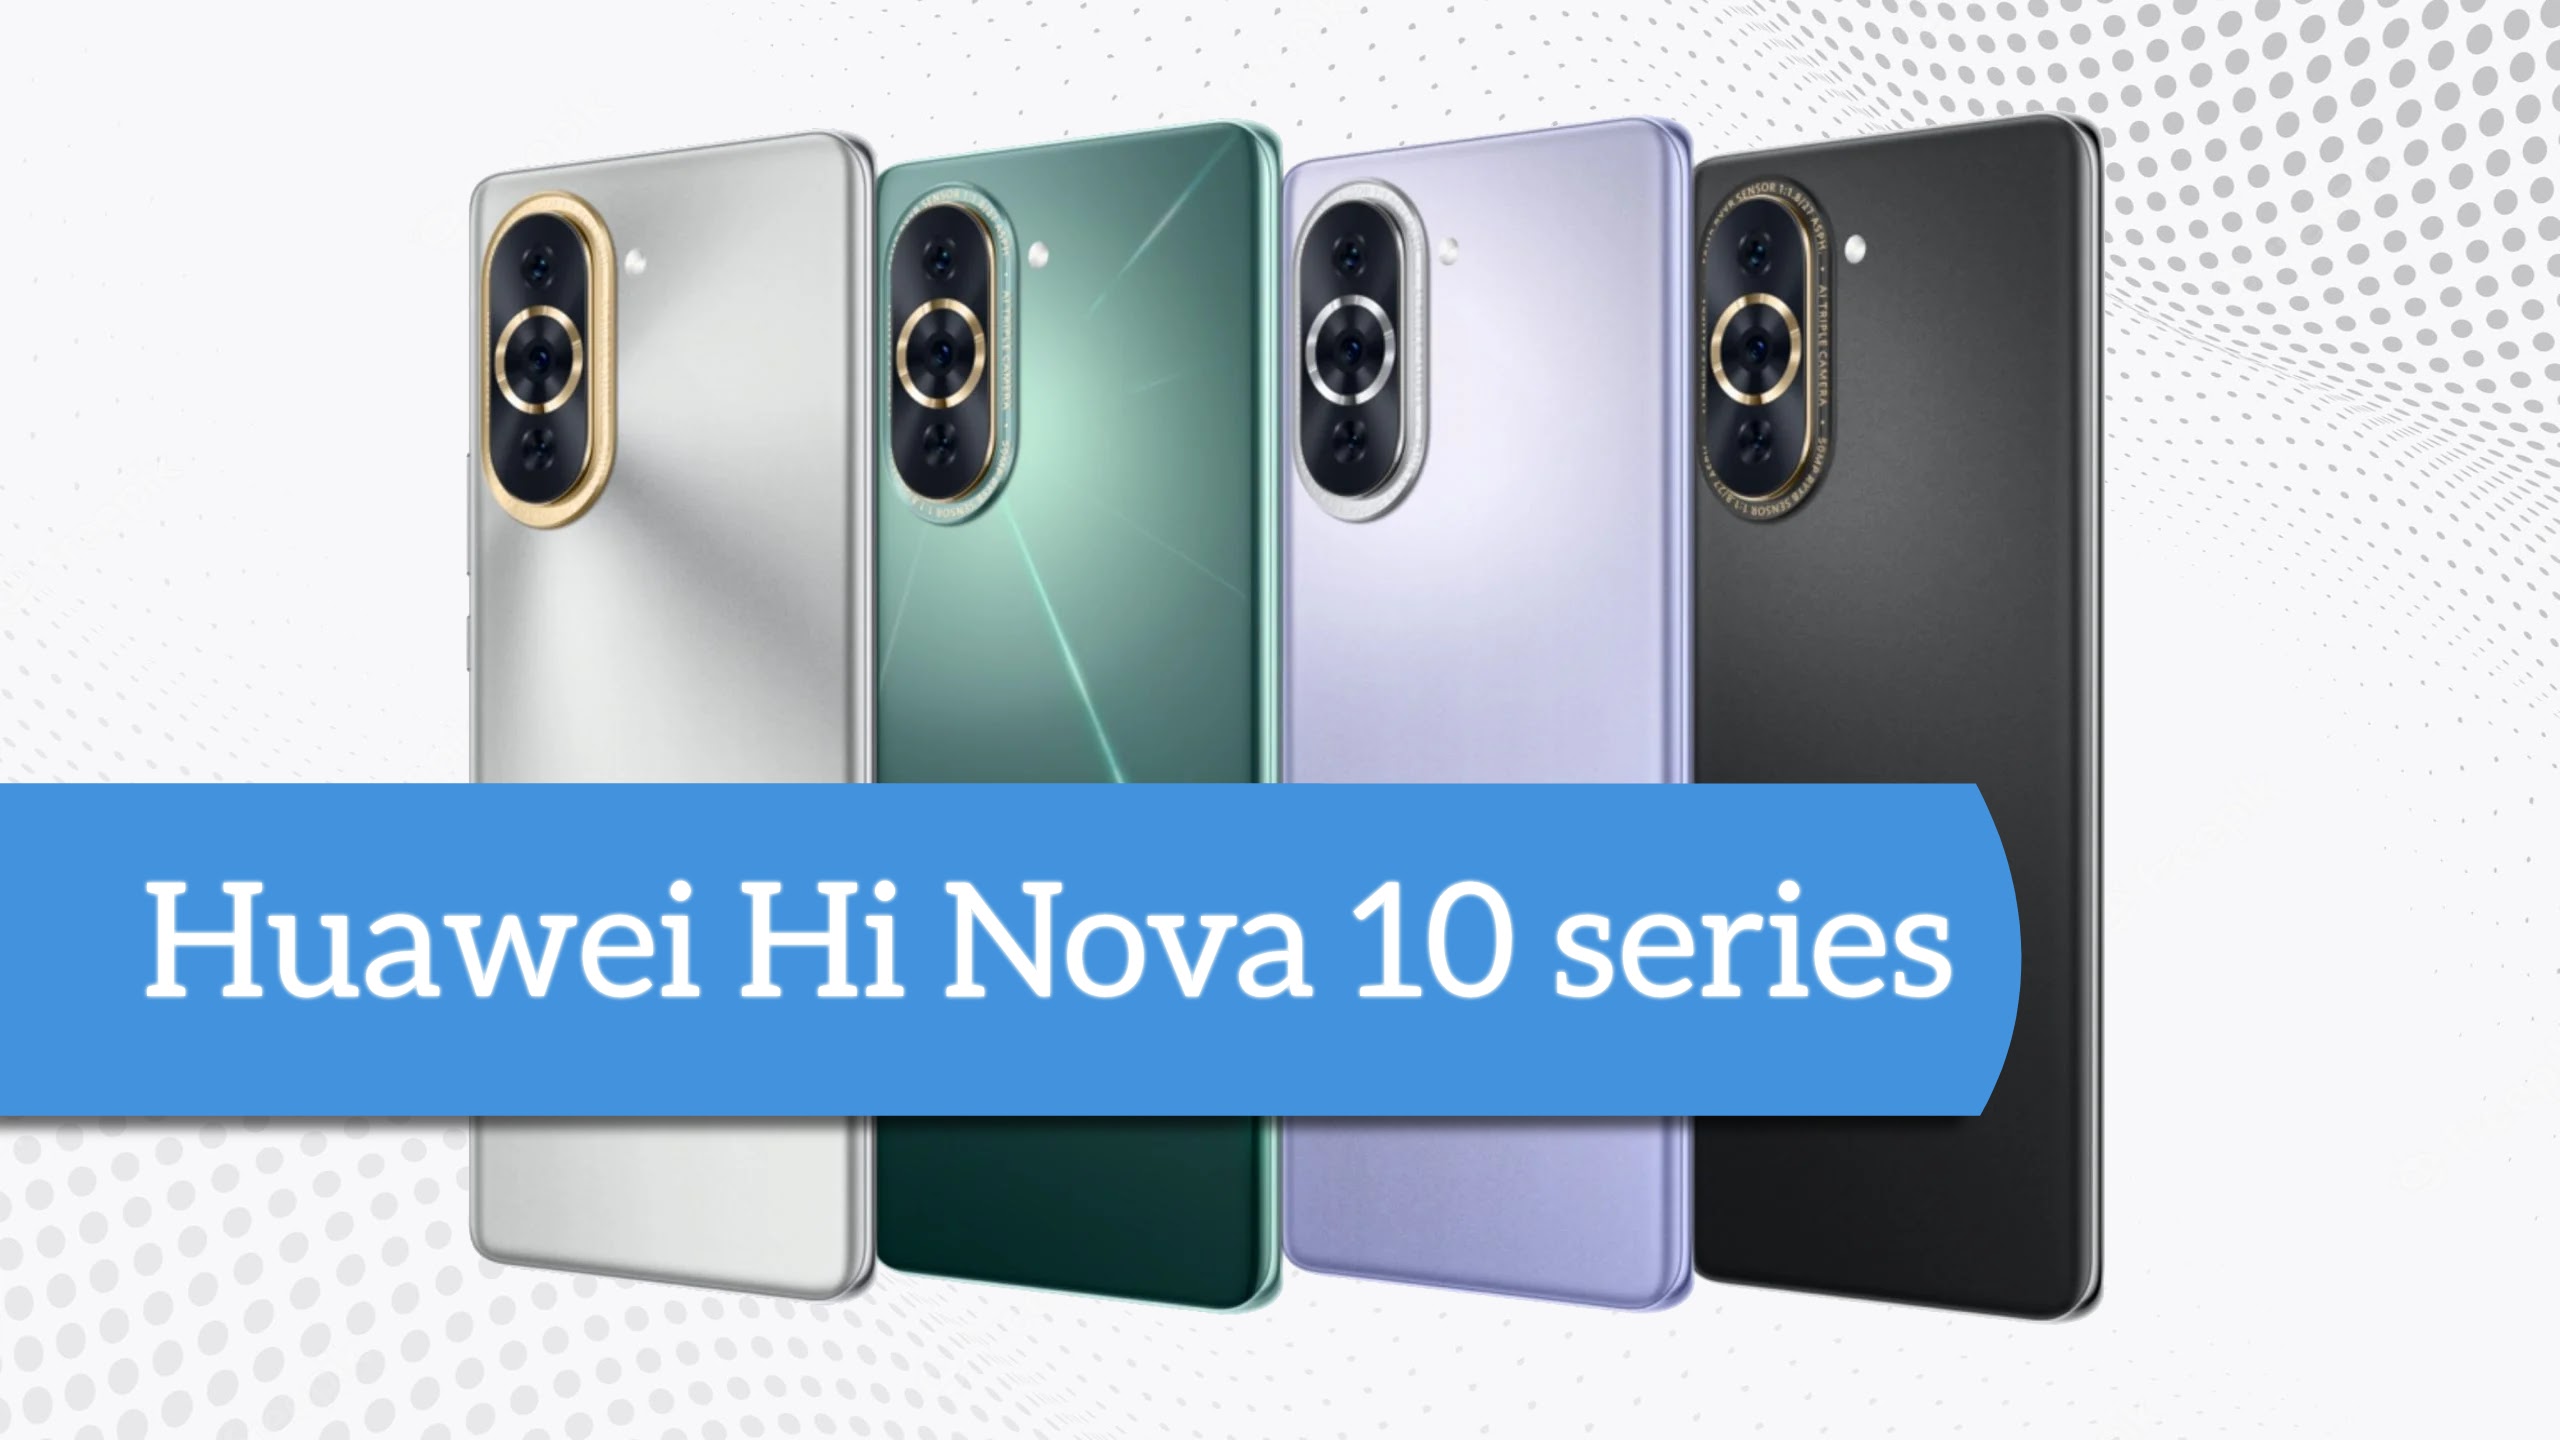 Huawei Hi Nova 10 series: Supports 100W Fast Charging